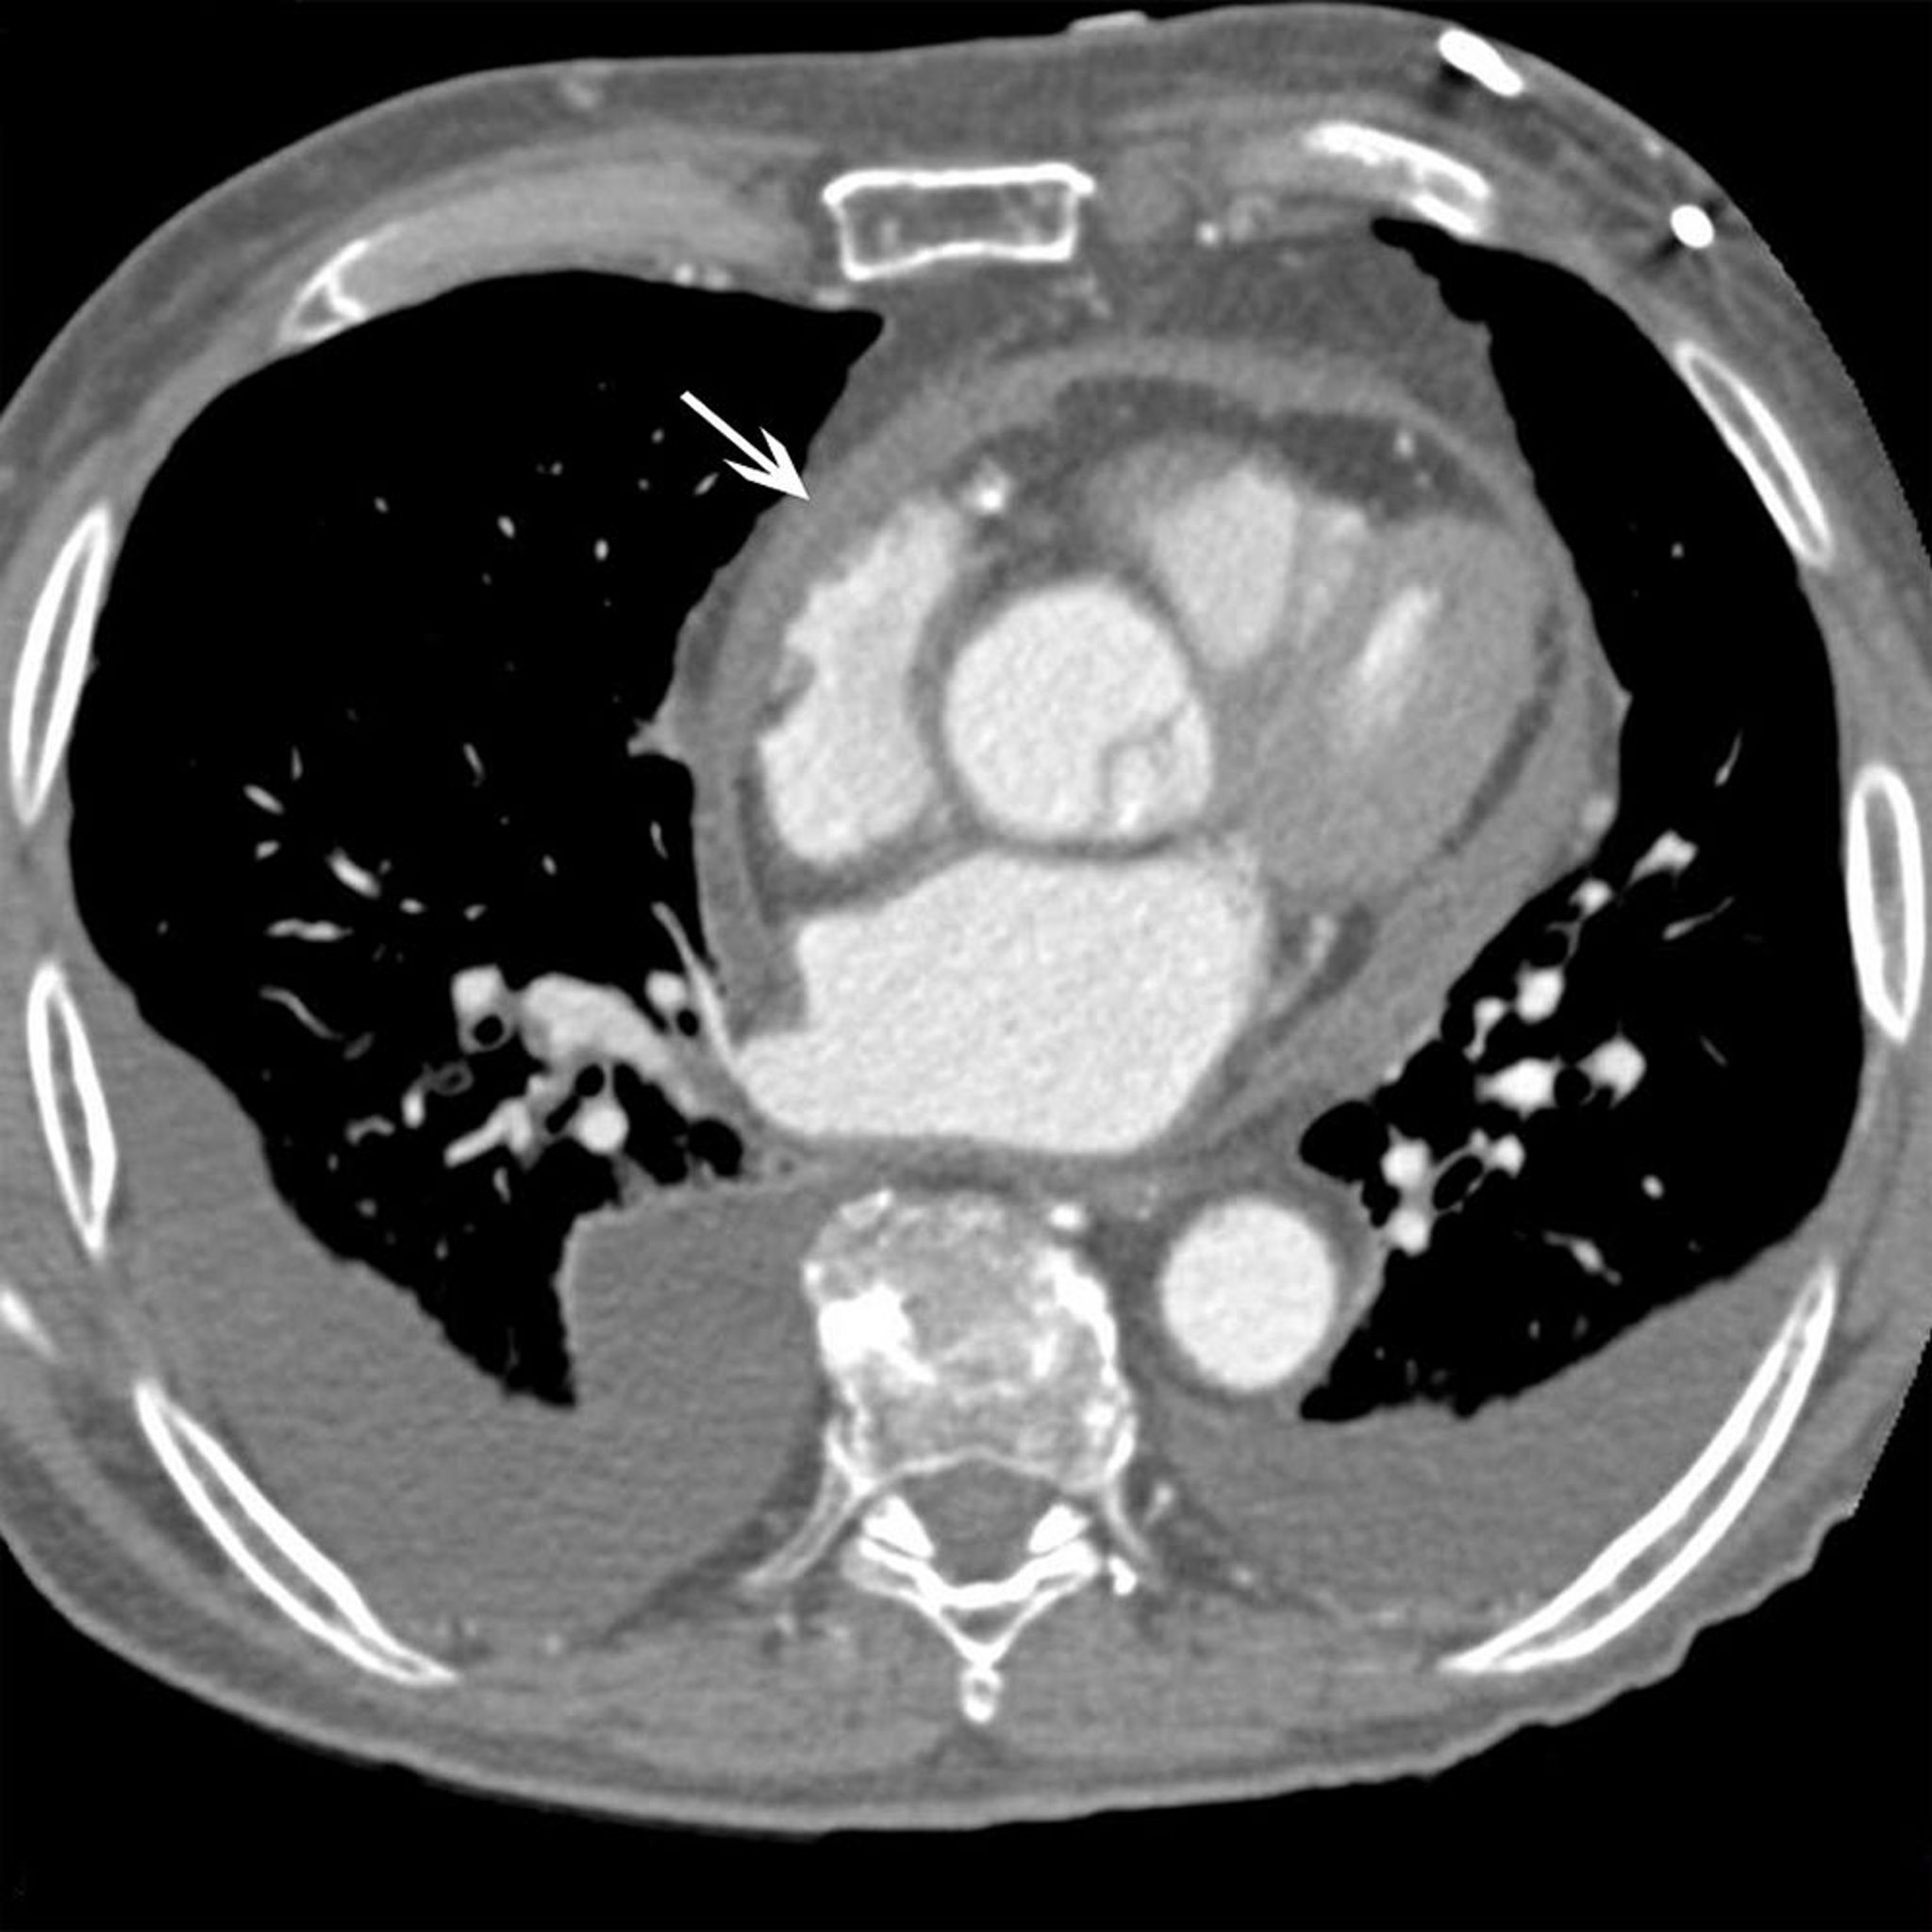 缩窄性心包炎患者的 CT 扫描